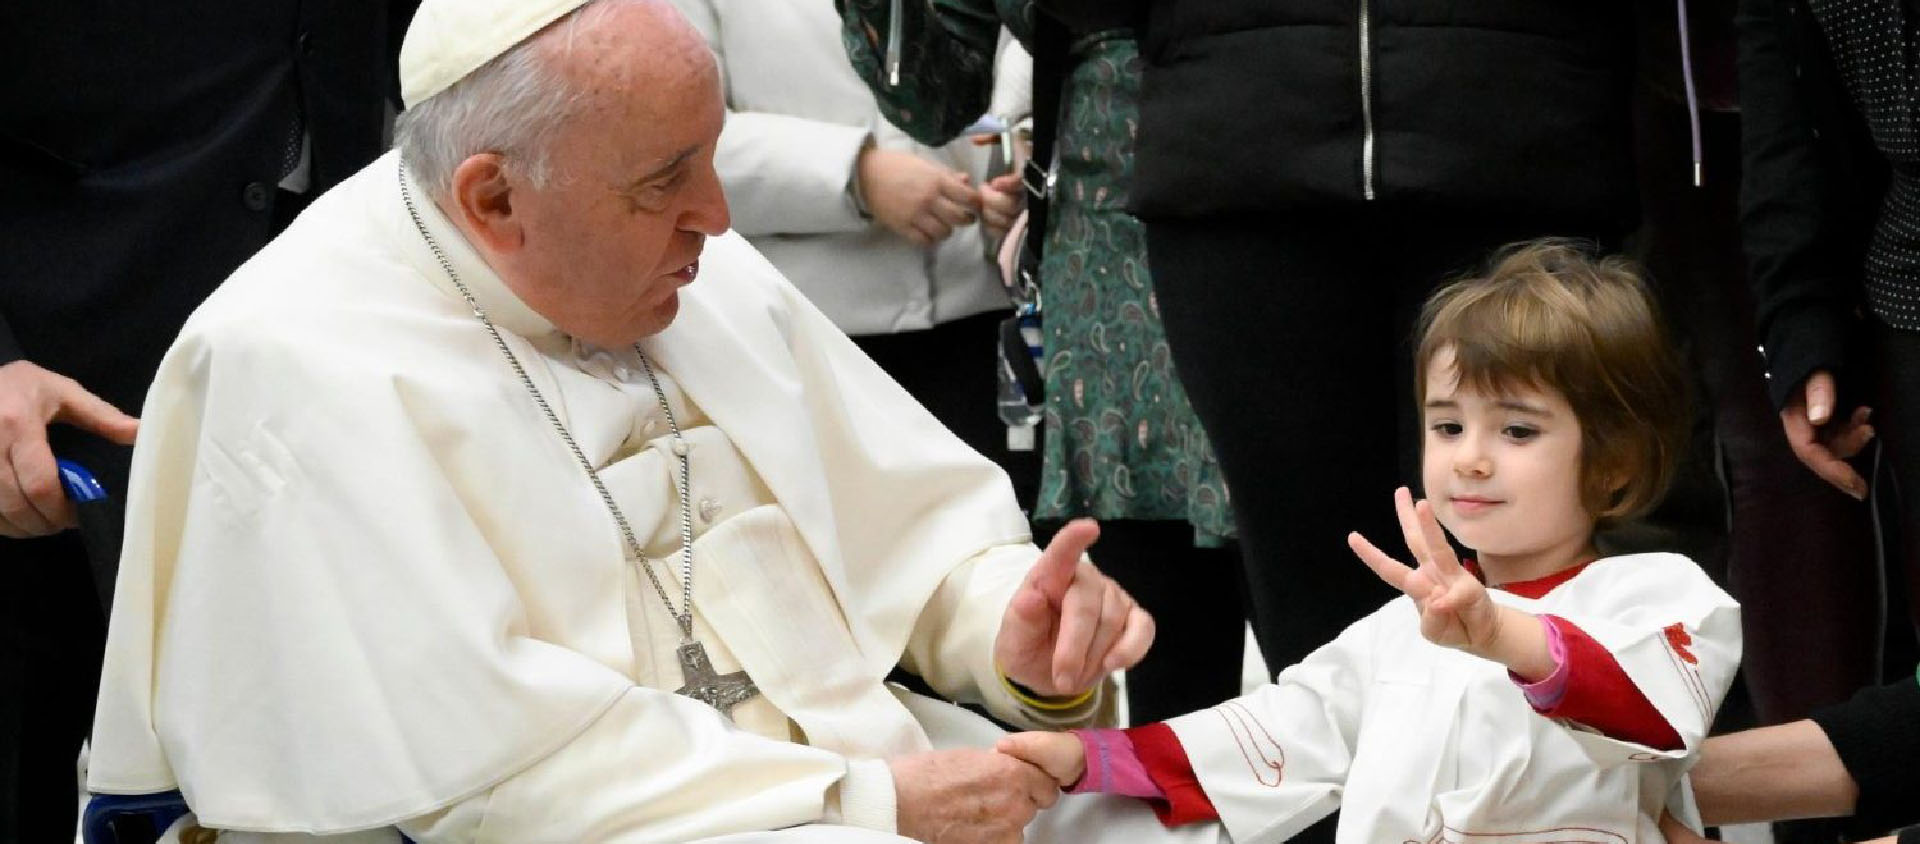 «La possessivité est l’ennemi du bien et elle tue l’affection», a insisté le pape, ici à la fin de l'audience avec un servant de messe | © Vatican Media